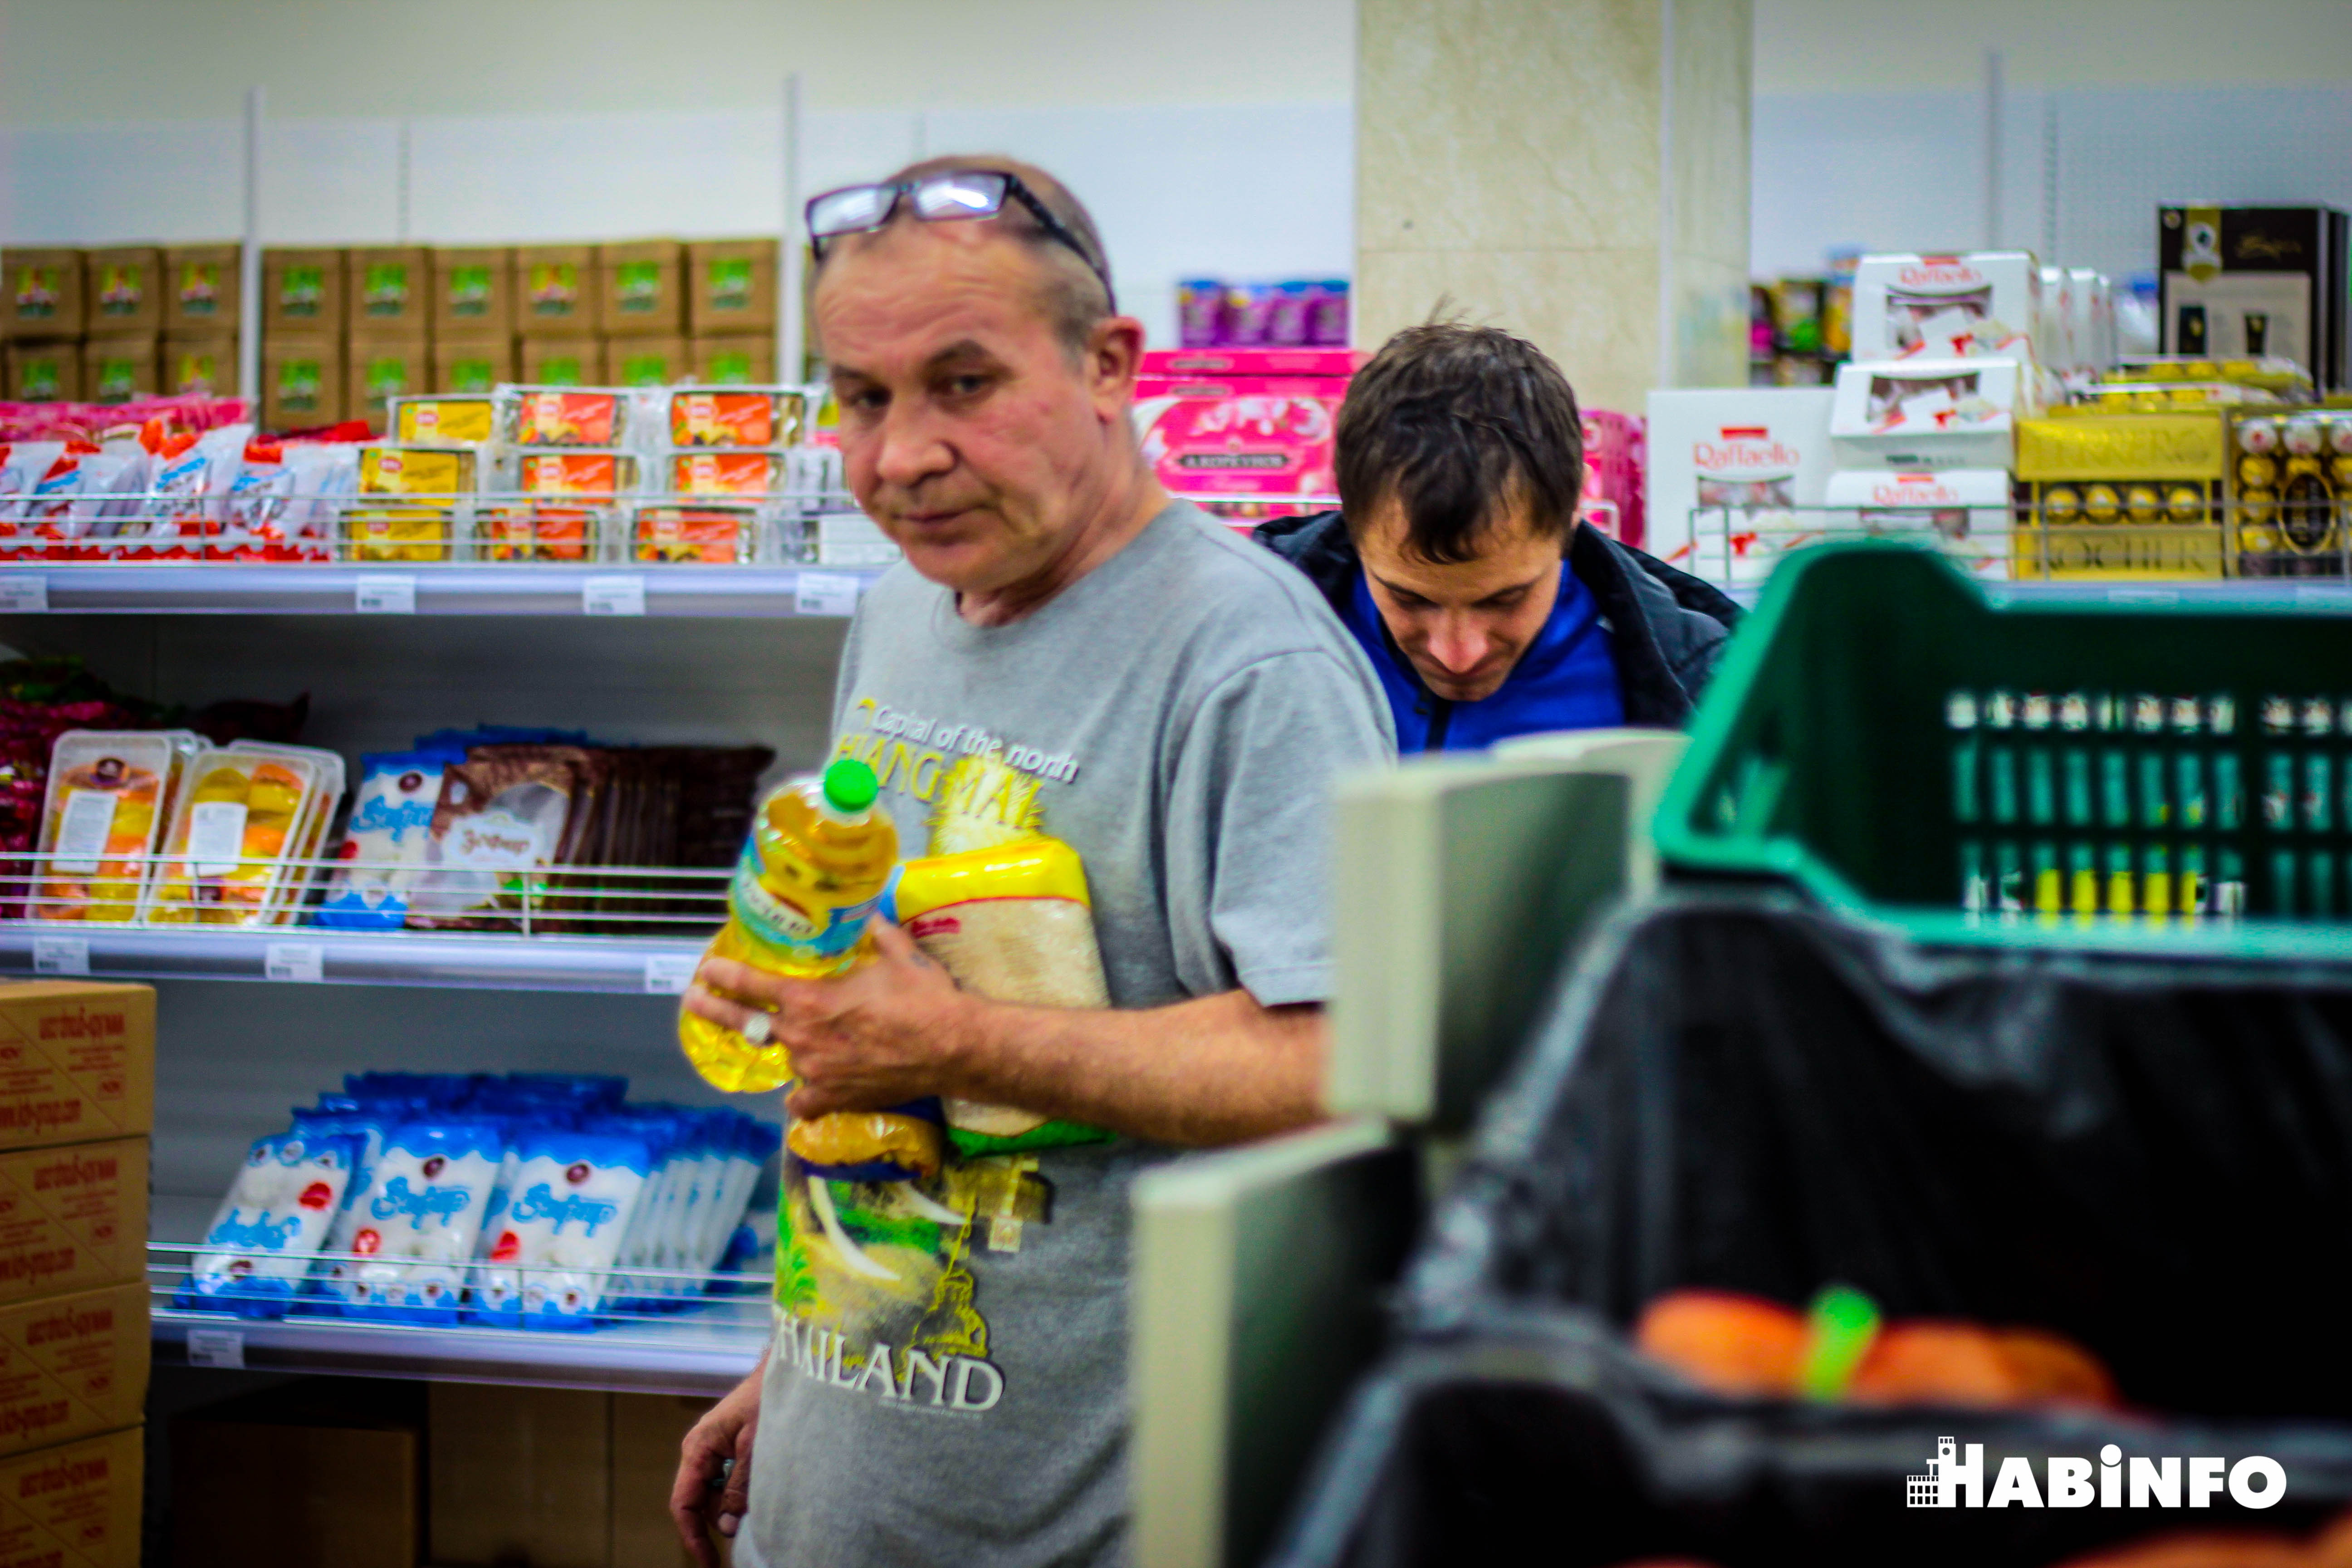 Хабаровчане стали чаще ходить в экономные магазины